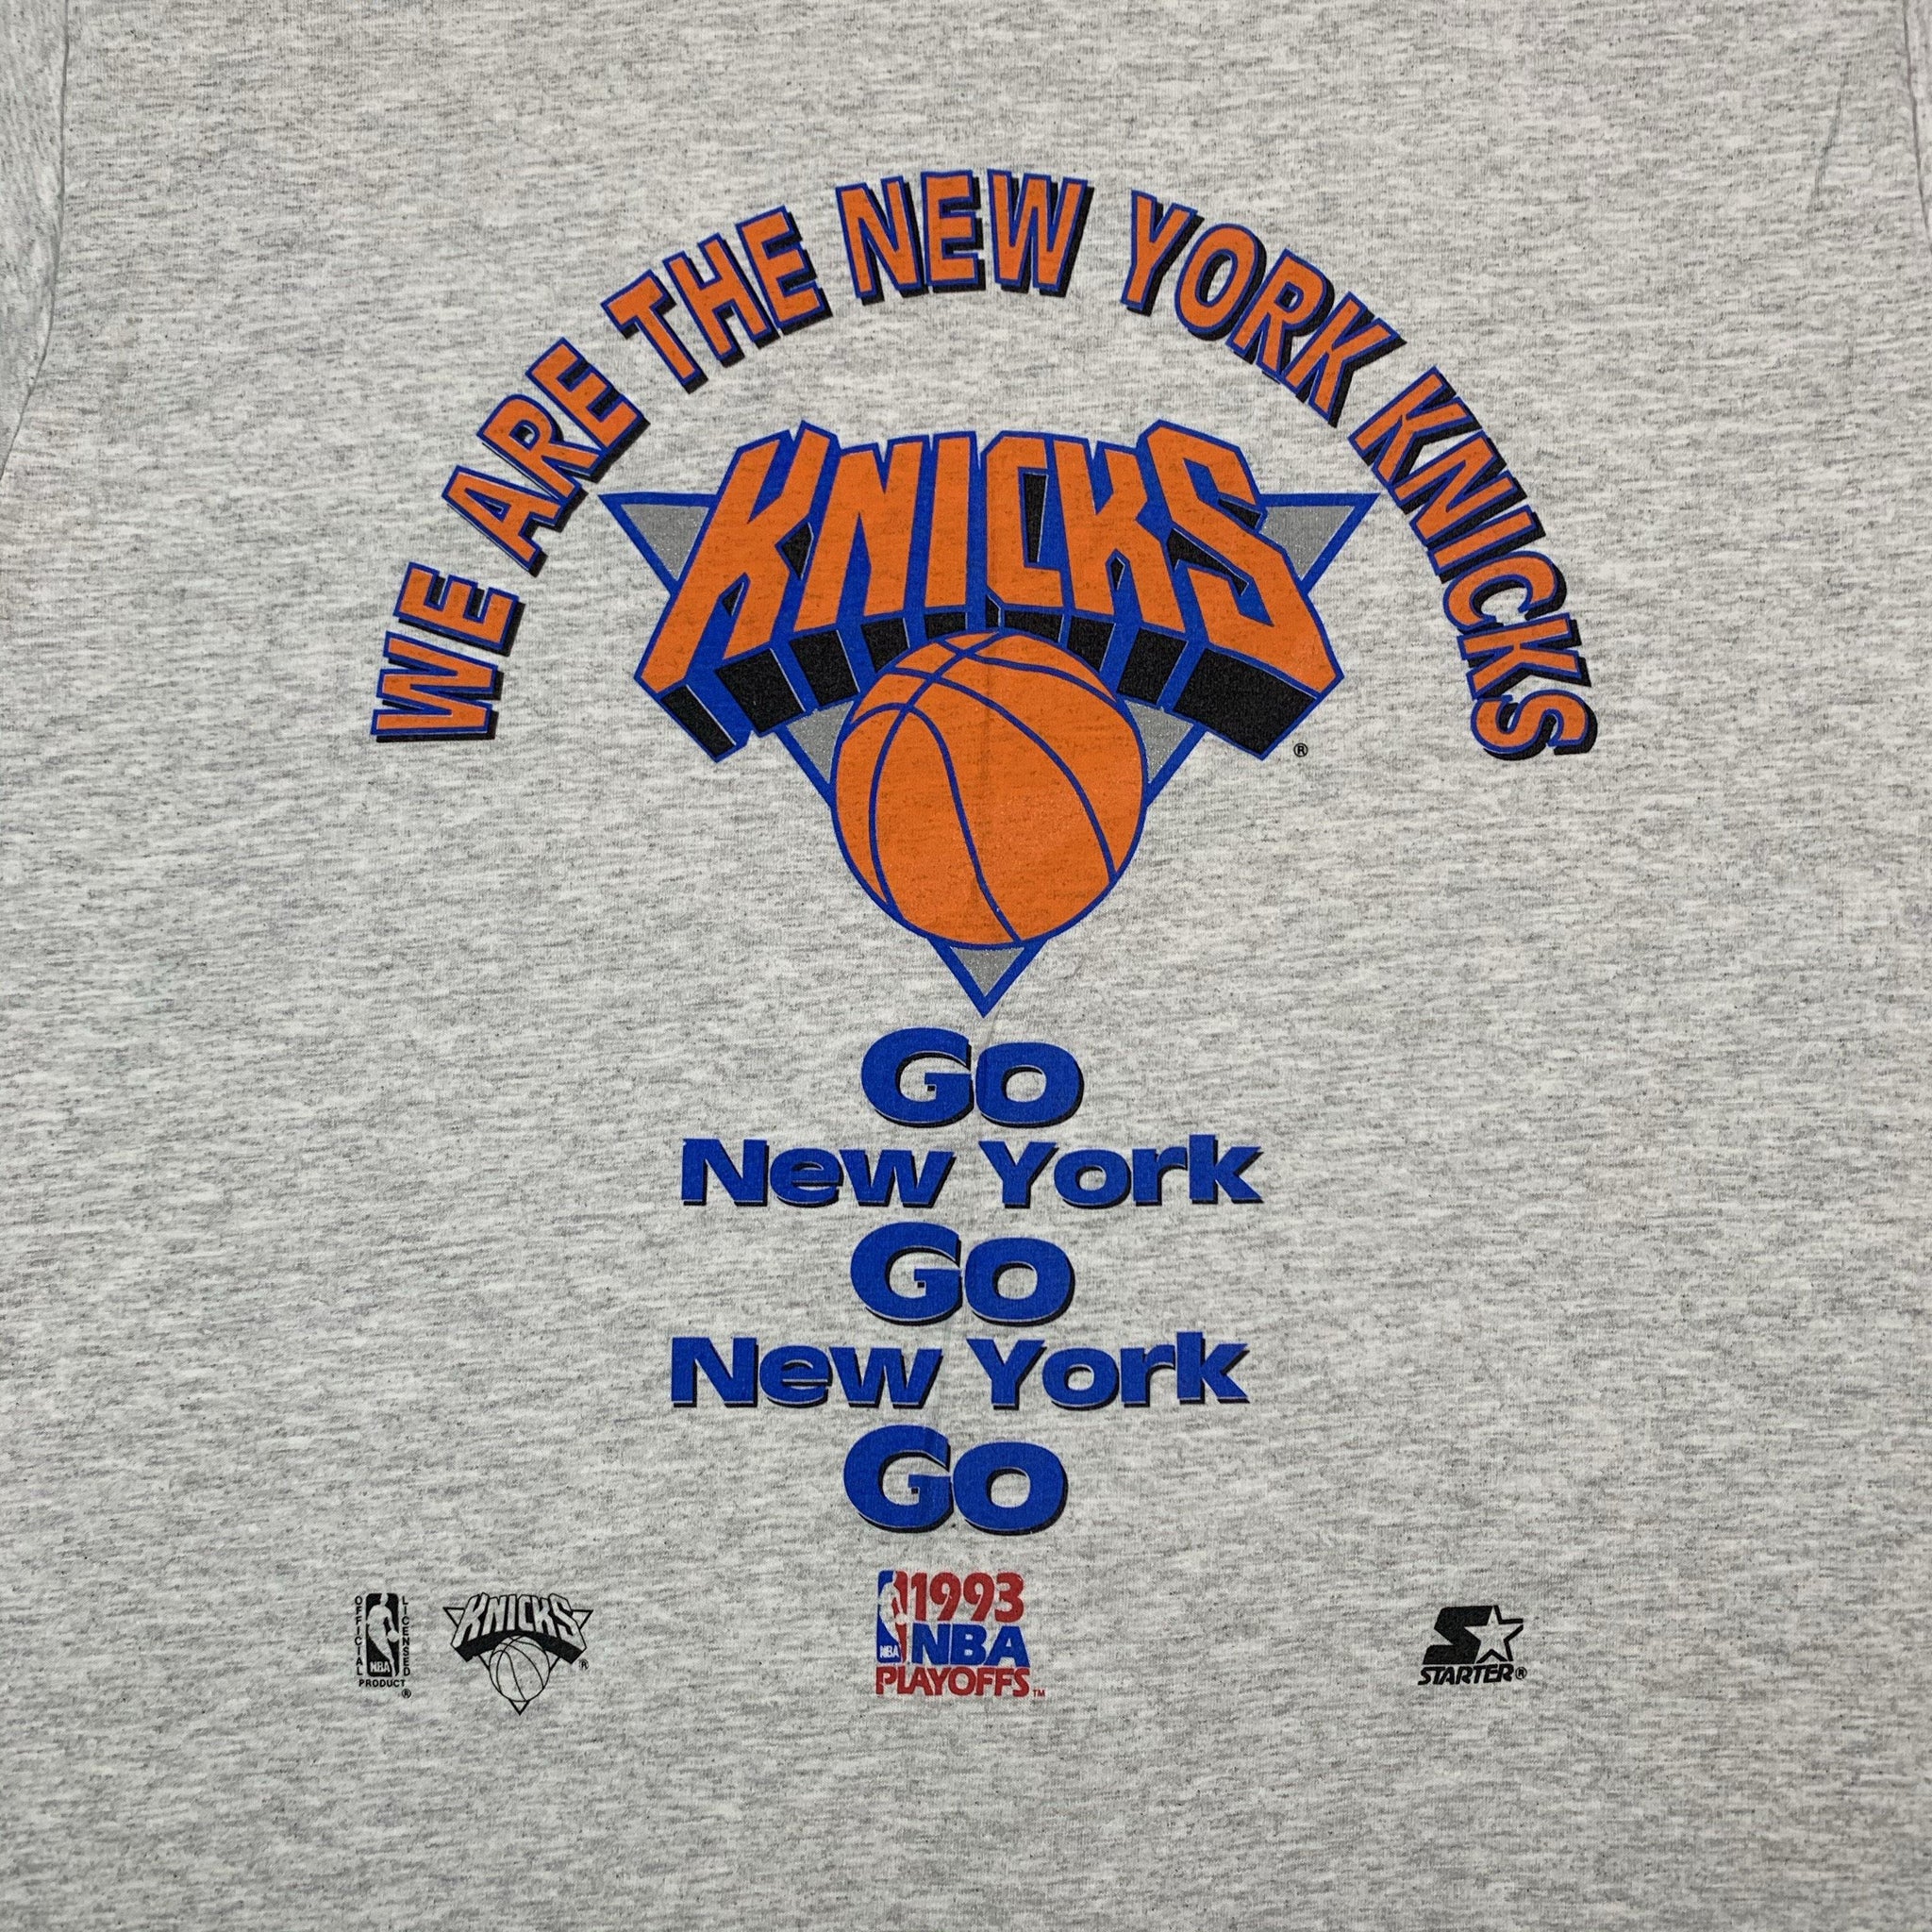 Vintage 90's NBA New York Knicks All Over Print Shirt